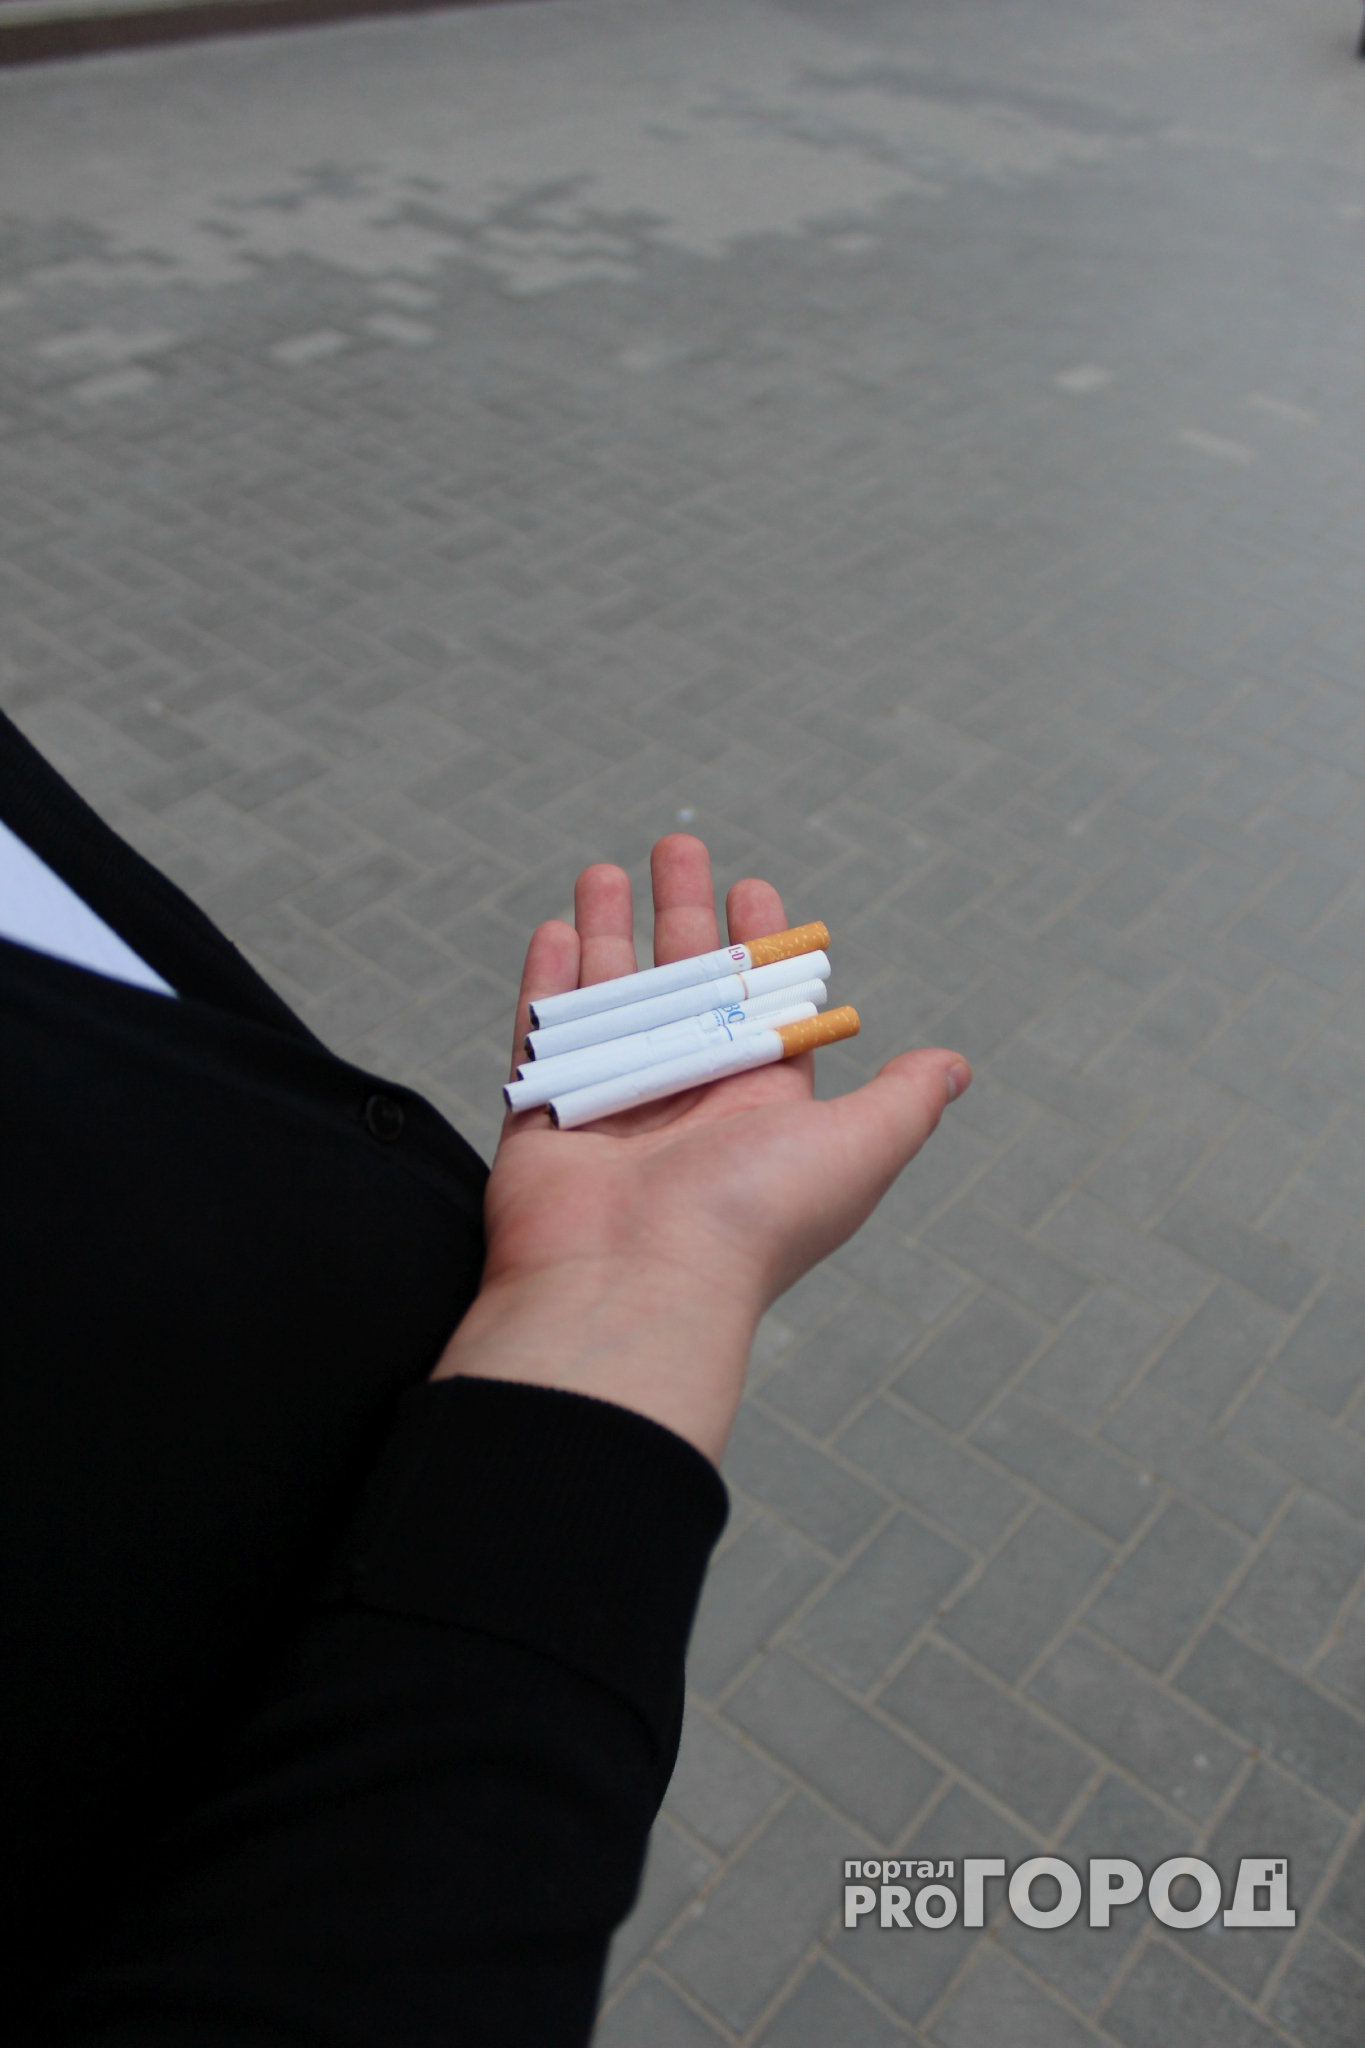 Жители Марий Эл заплатили 570 тысяч рублей за привычку покурить «где не надо»